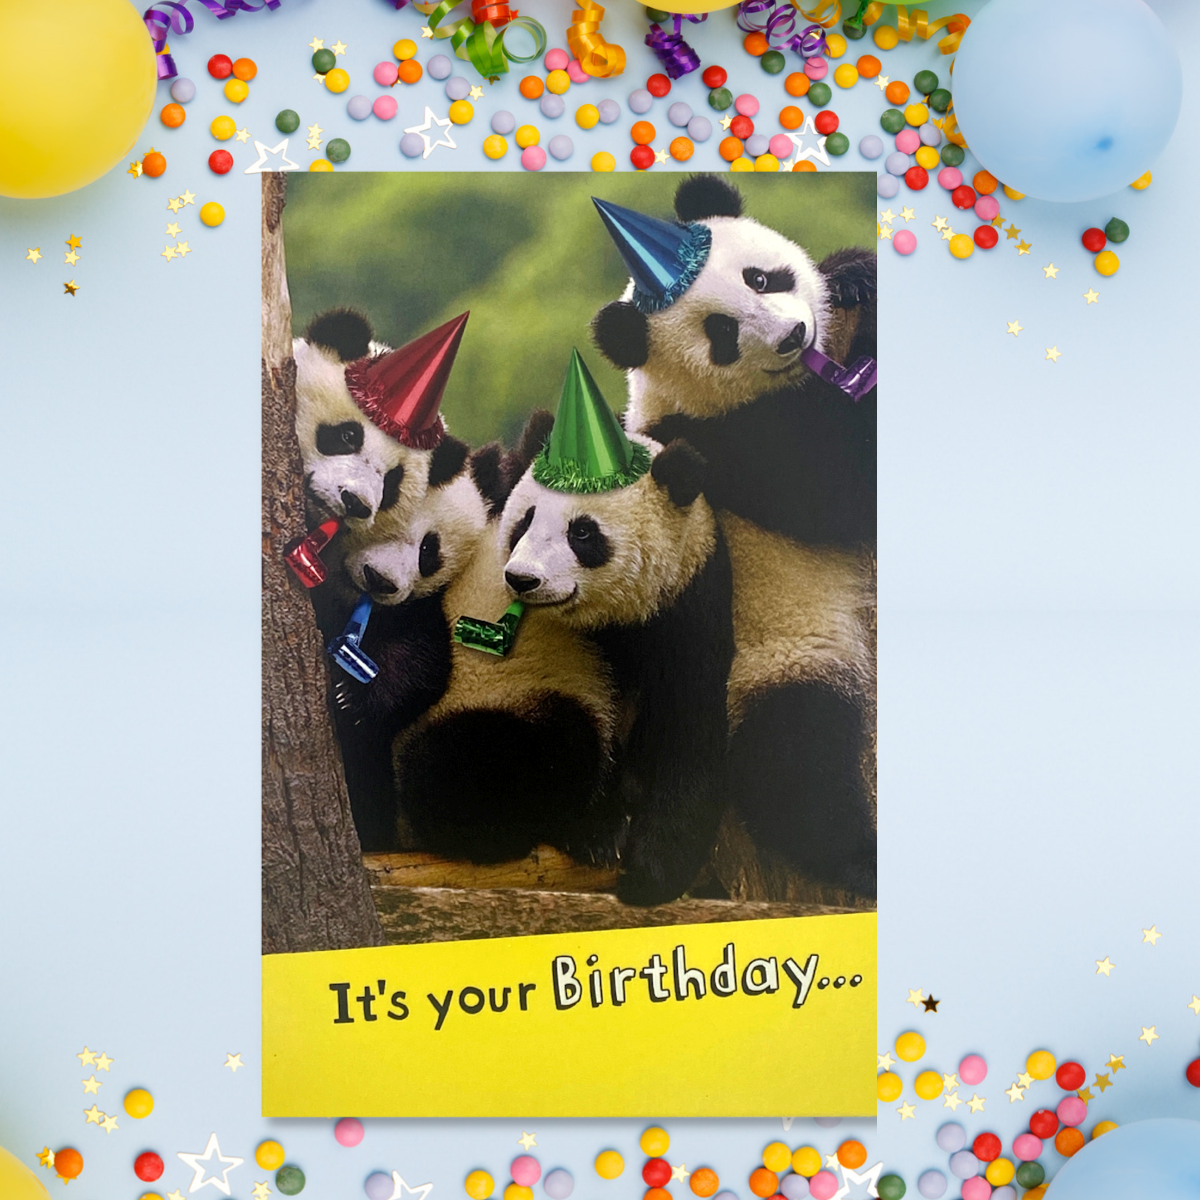 Say Cheese - Pandas Funny Birthday Card